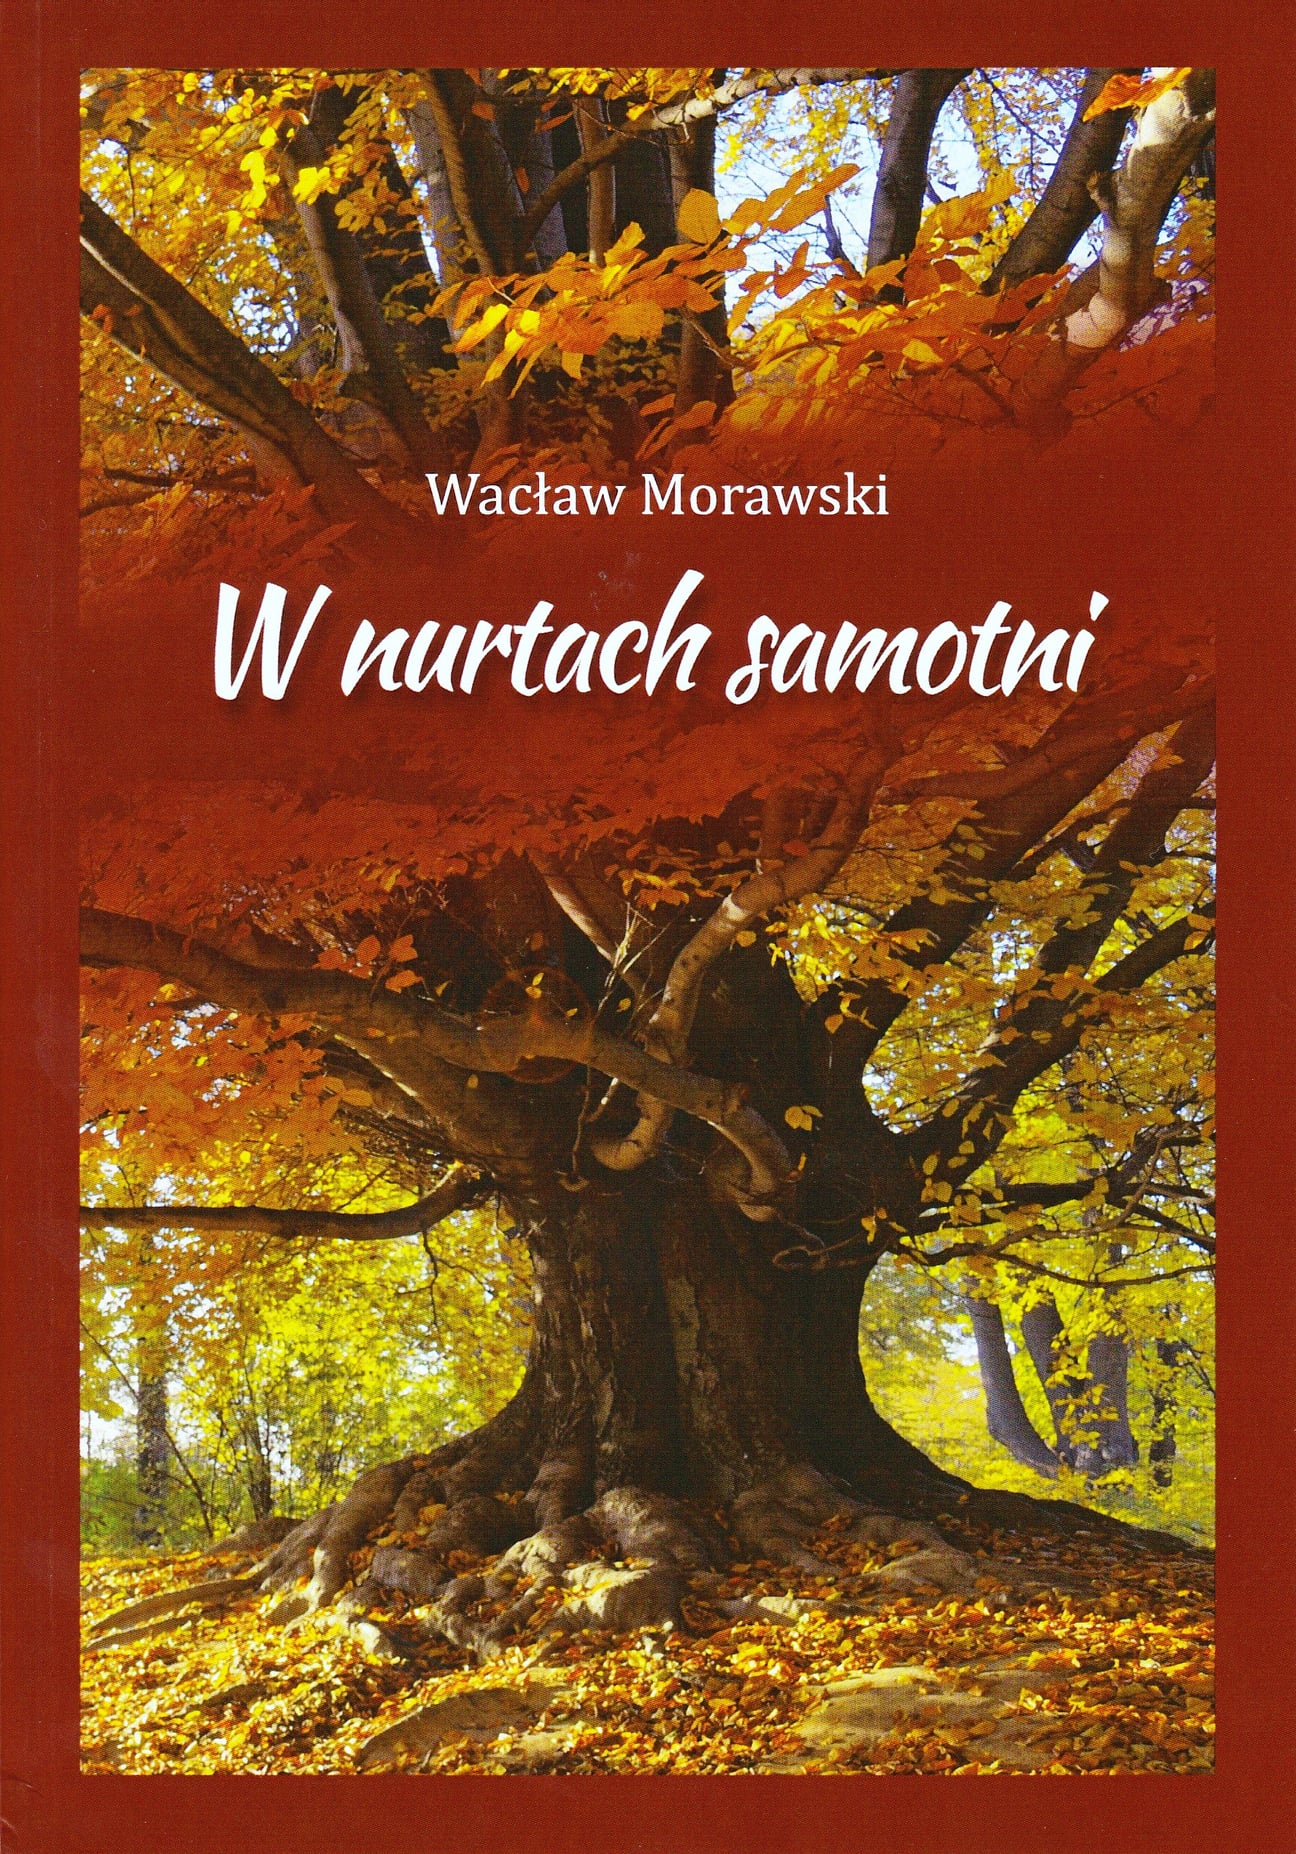  Wacław Morawski: W nurtach samotni Na zdjęciu okładka książki 